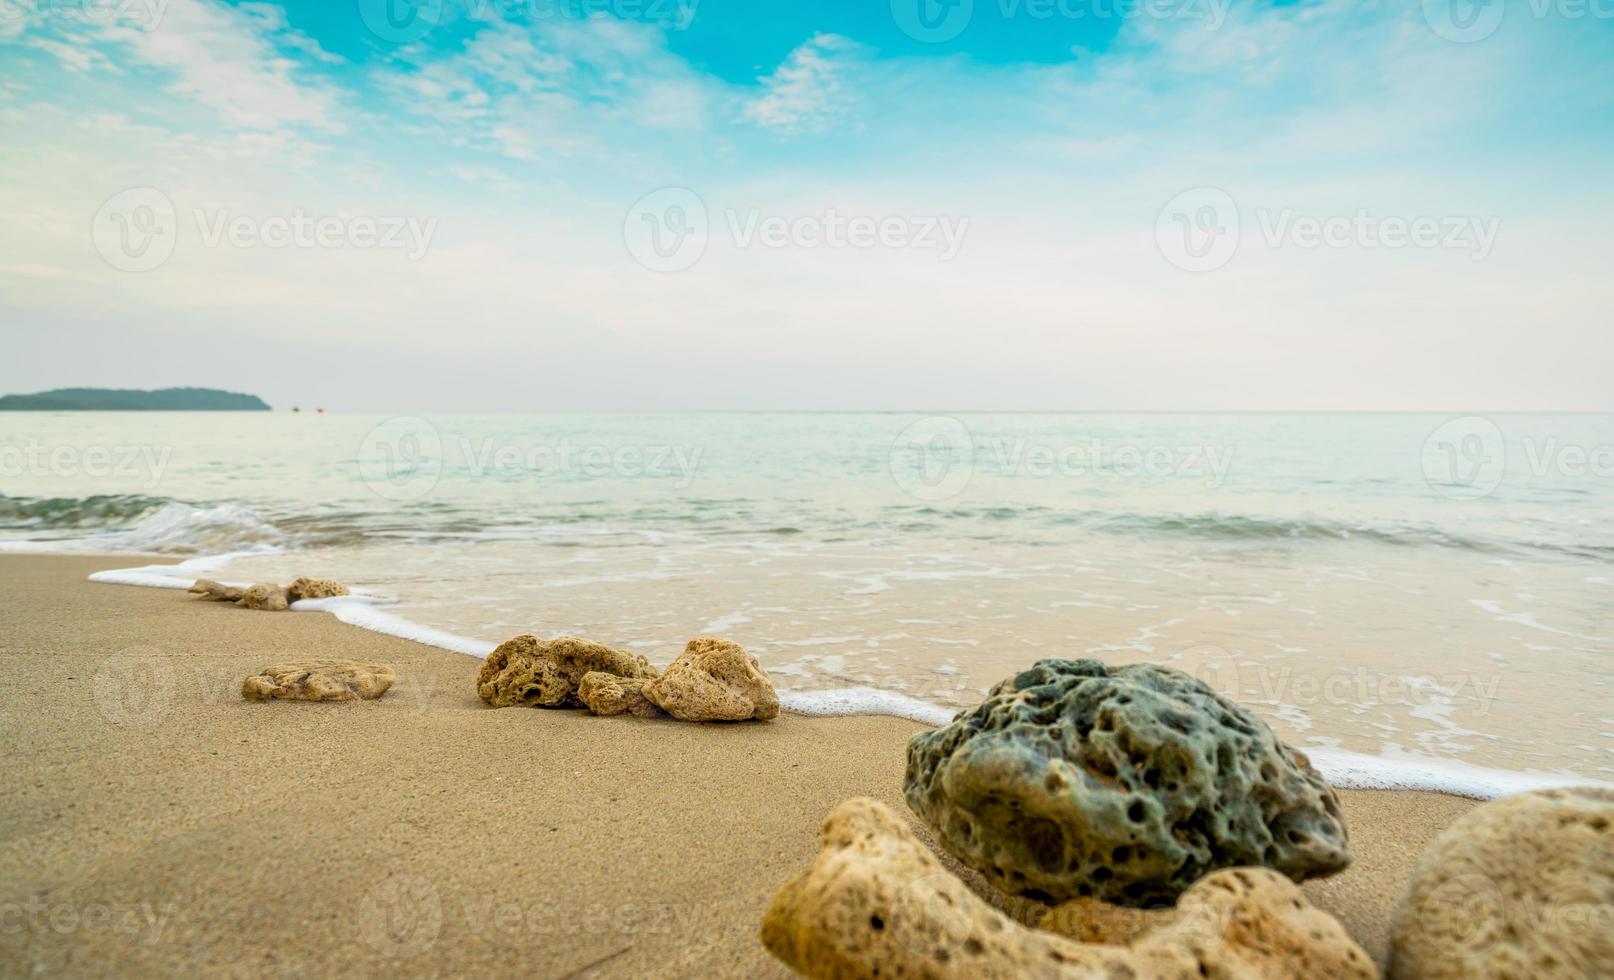 coraux sur la plage de sable au bord de la mer avec ciel bleu et nuages blancs. vacances d'été sur le concept de plage paradisiaque tropicale. ondulation des éclaboussures d'eau sur la plage de sable. ambiance estivale. coraux rejetés sur le rivage. photo